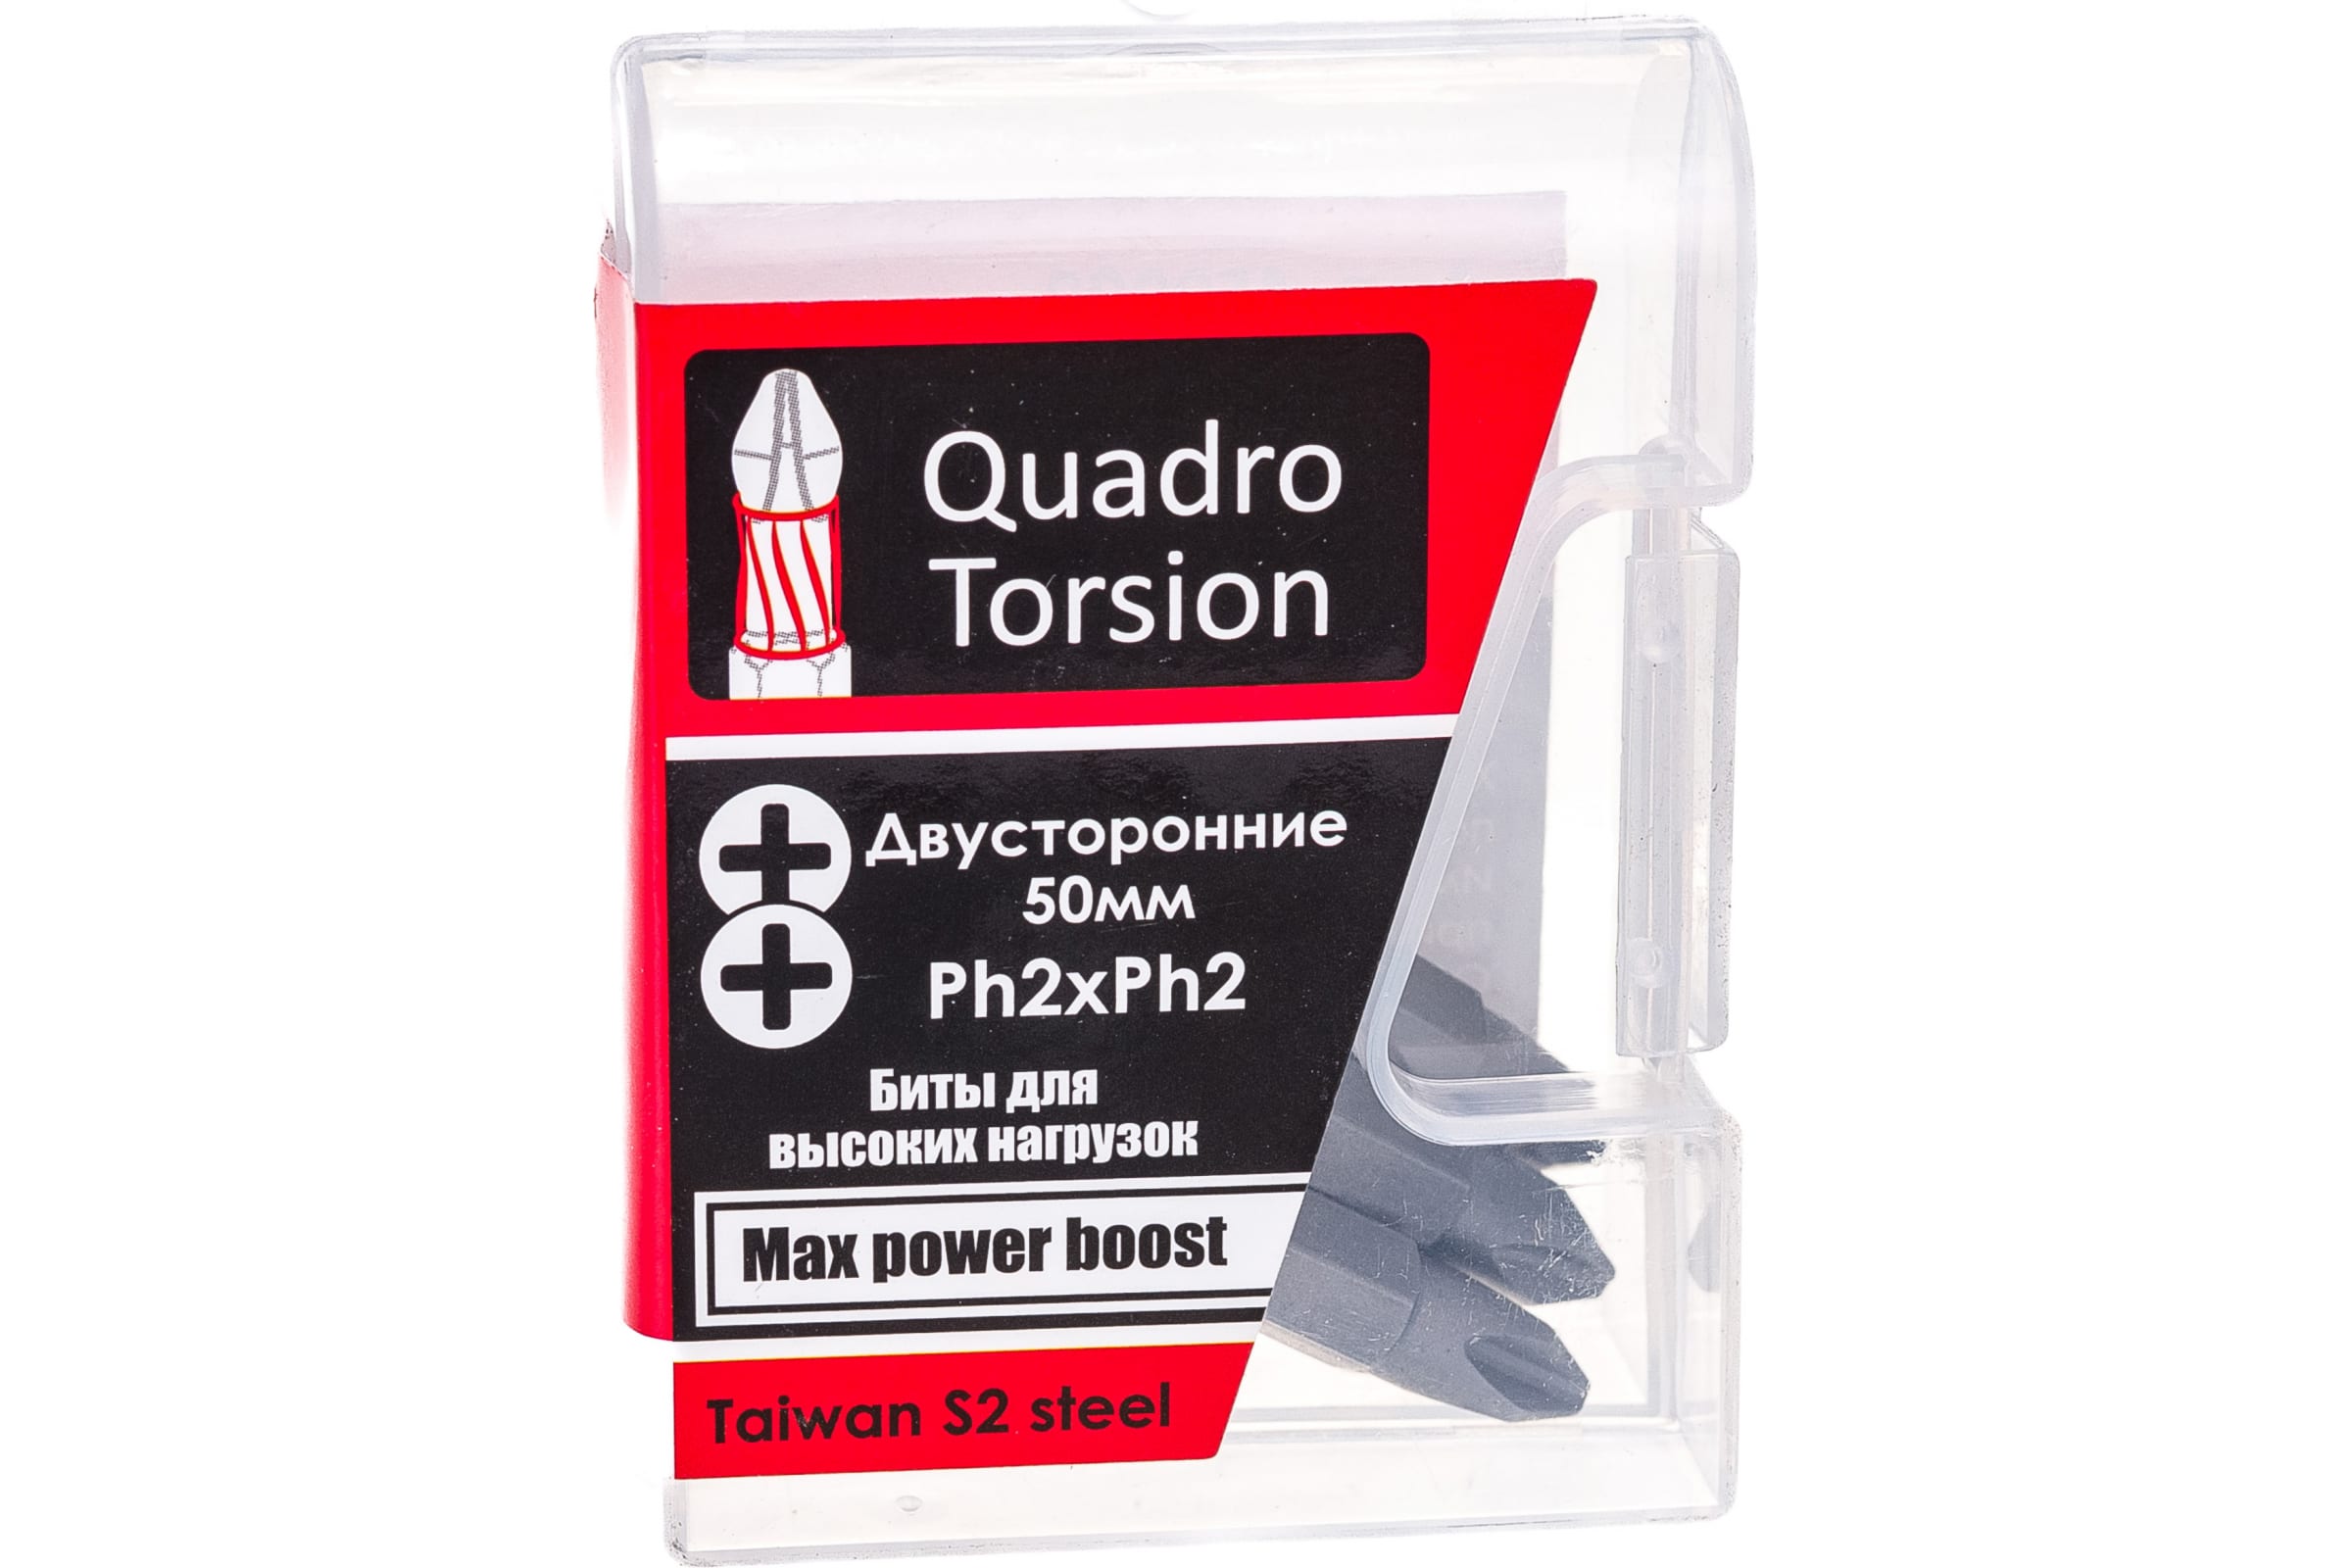 Quadro Torsion бита 1/4 двусторонняя Ph2xPh2 - 50мм 5шт./кор. 450022 доска магнитная двусторонняя 50 × 35 см